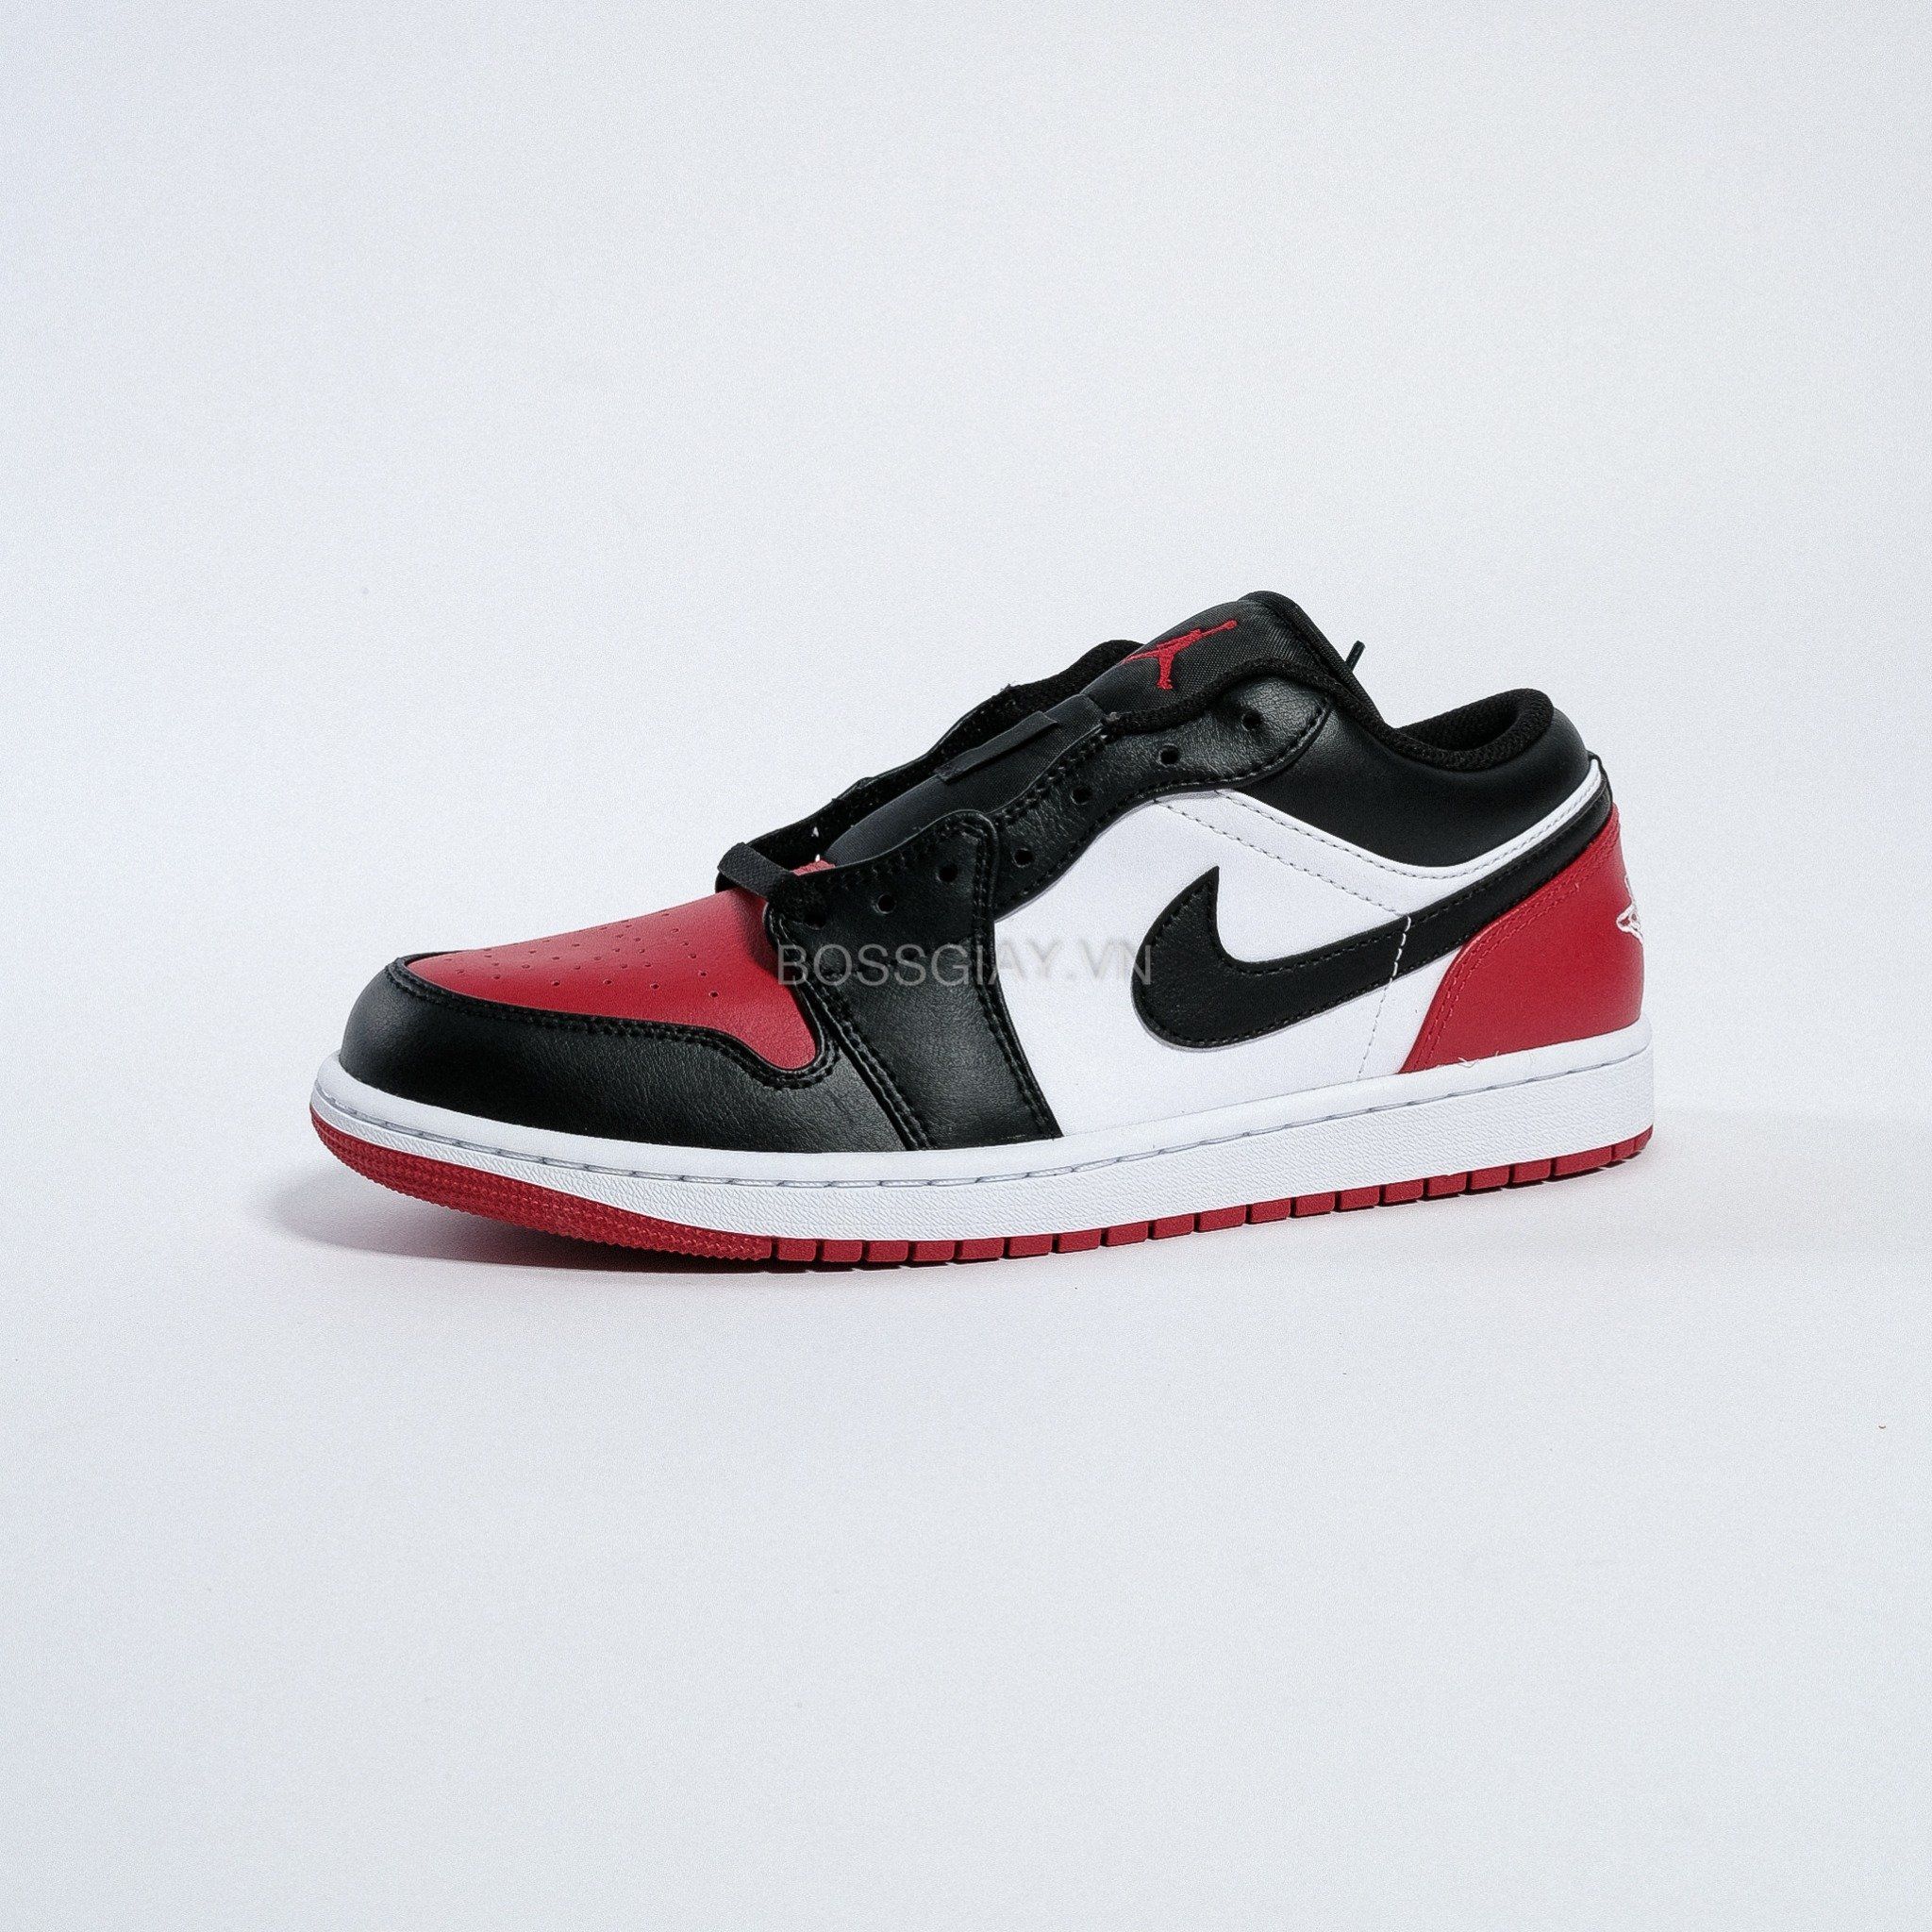  Nike Air Jordan 1 Low Bred Toe 553558 - 161 